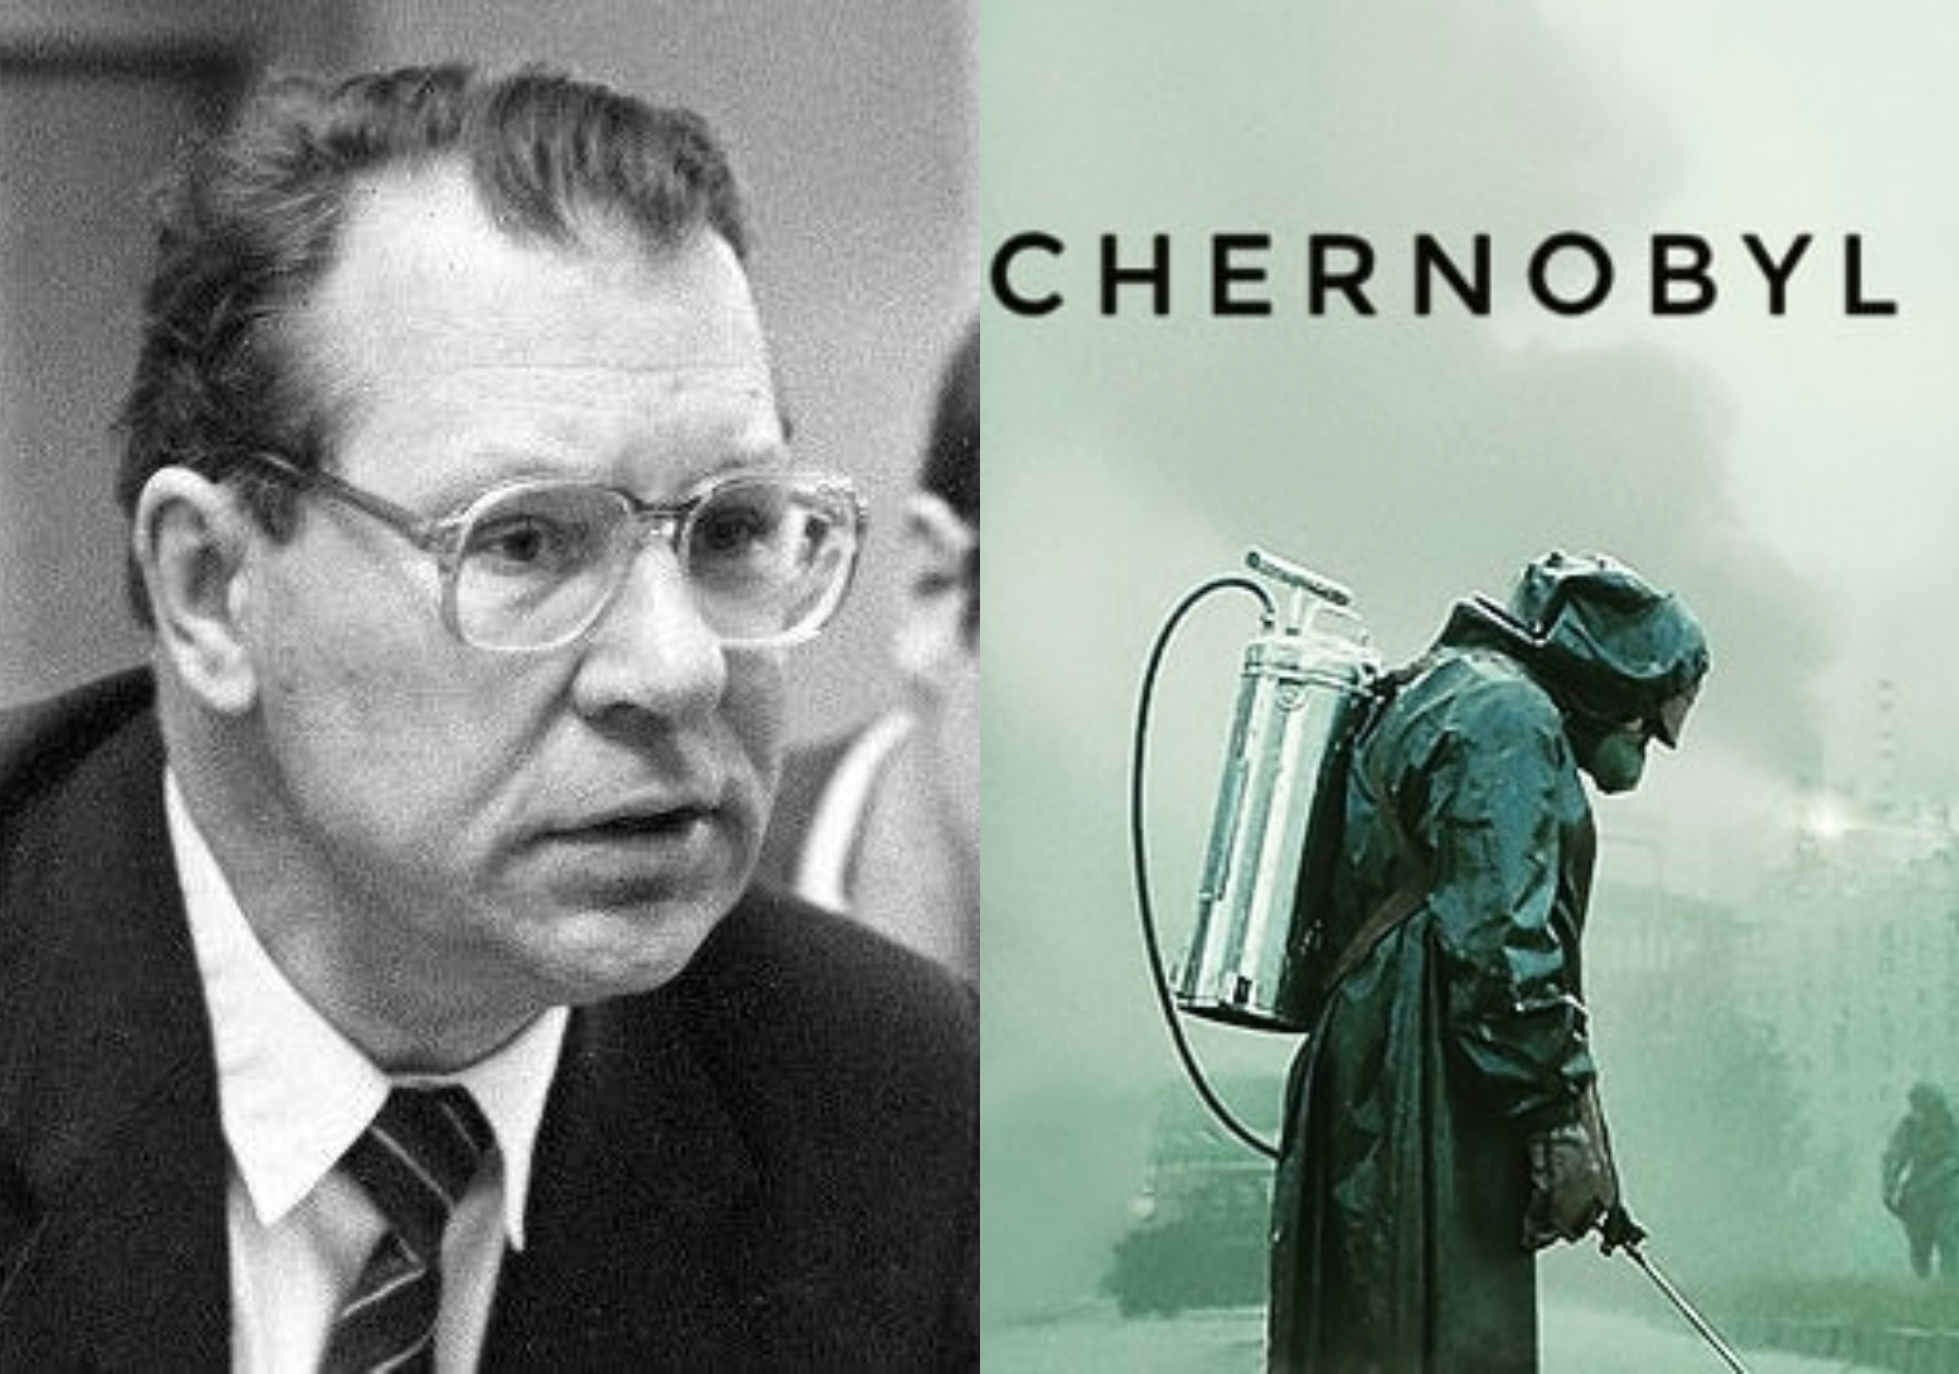 Βαλέρι Λεγκάσοφ: Ο Σοβιετικός ήρωας του Τσέρνομπιλ που είπε την αλήθεια και έσωσε εκατομμύρια ζωές αλλά έβαλε τέλος στην δική του